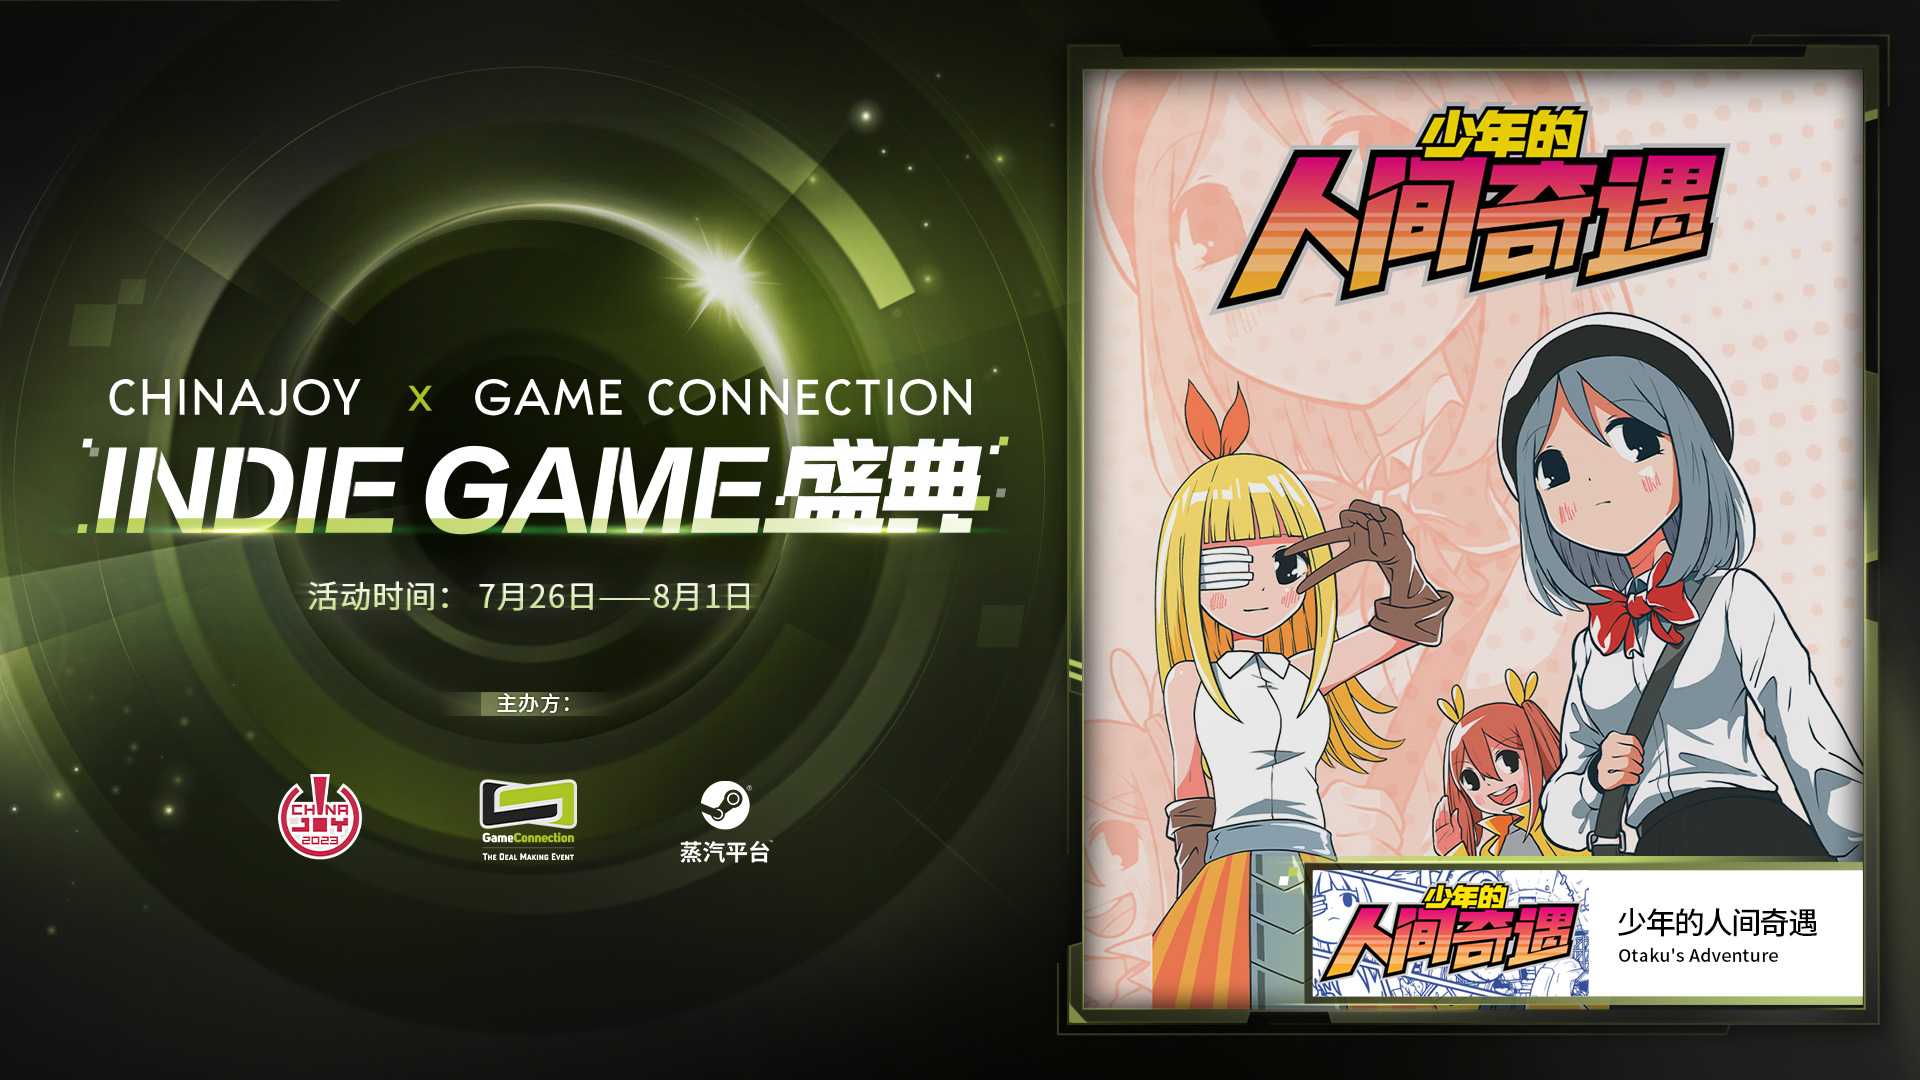 只属于独立游戏的夏日狂欢！“ChinaJoy x Game Connection INDIE GAME盛典”即将开启，百款精选独立佳作呈现！